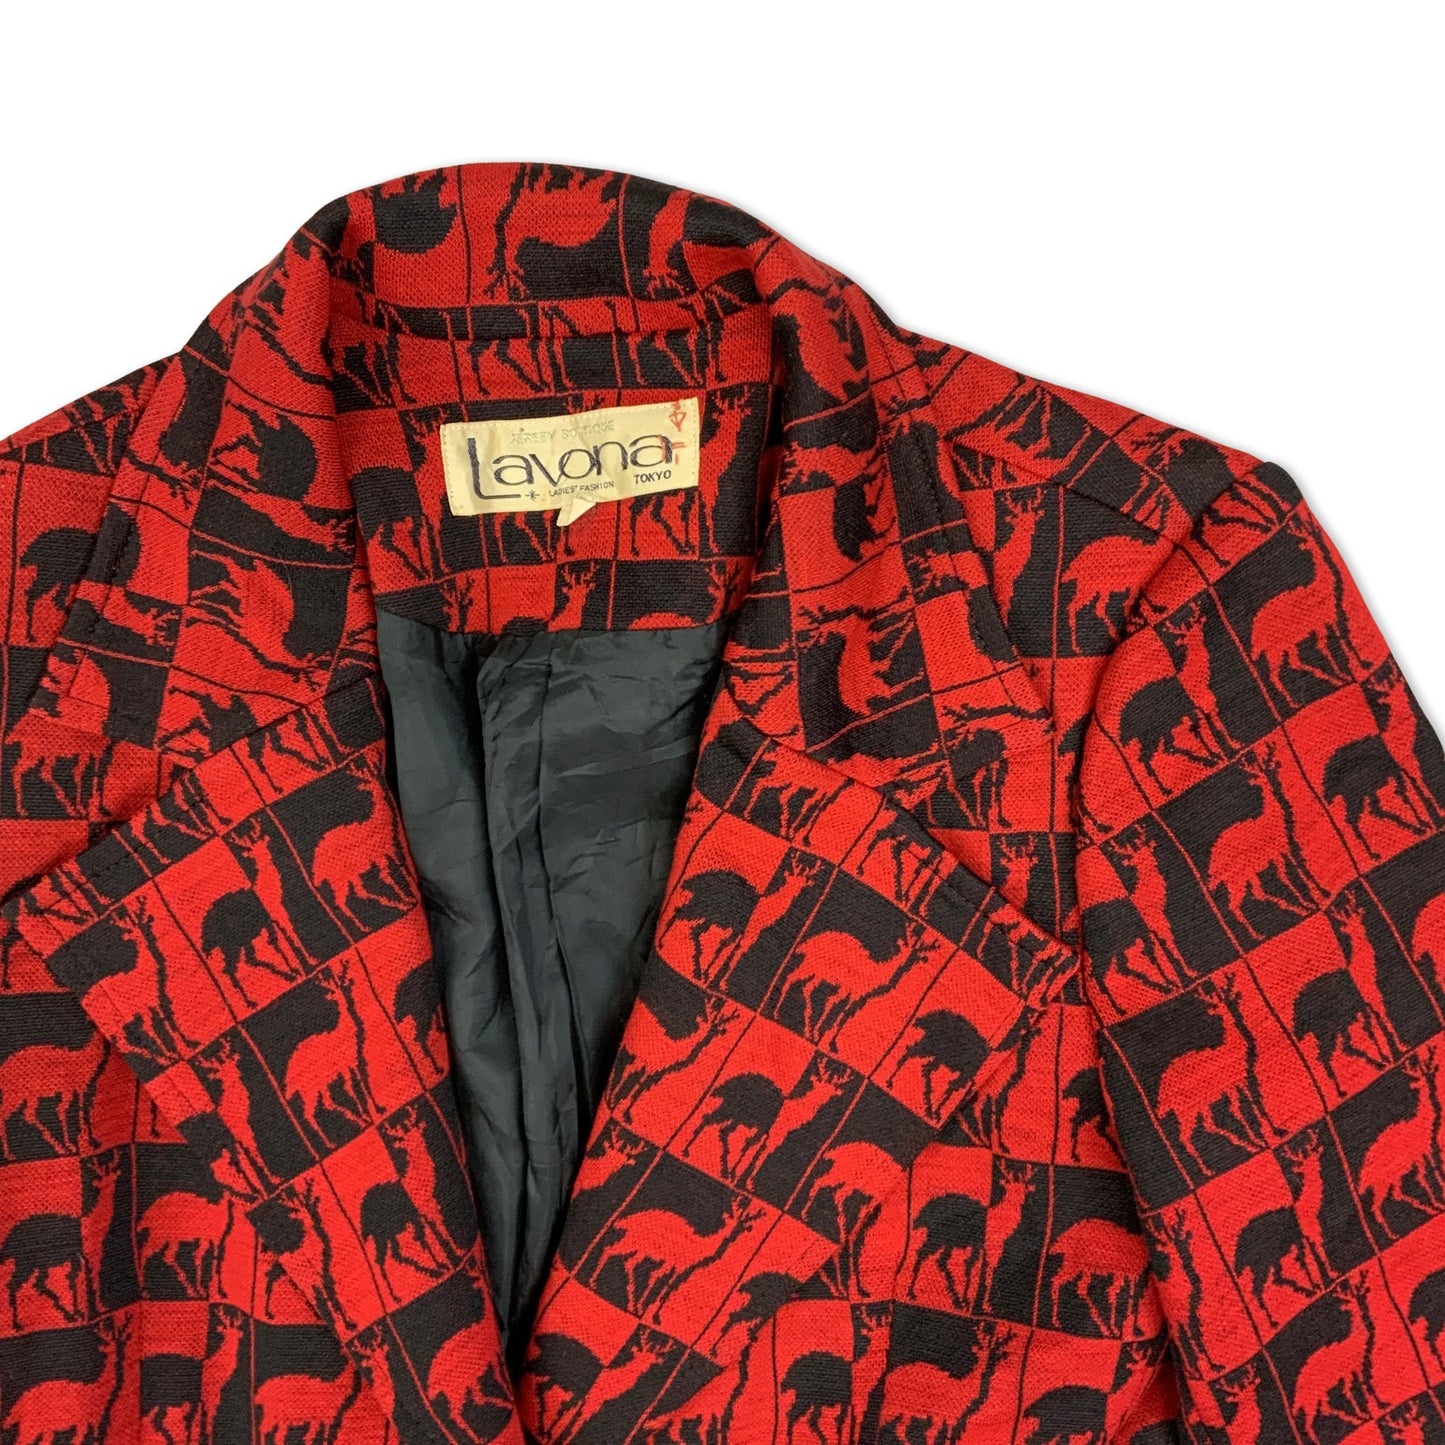 Vintage 90s Red and Black Deer Print Ladies' Blazer 6-8